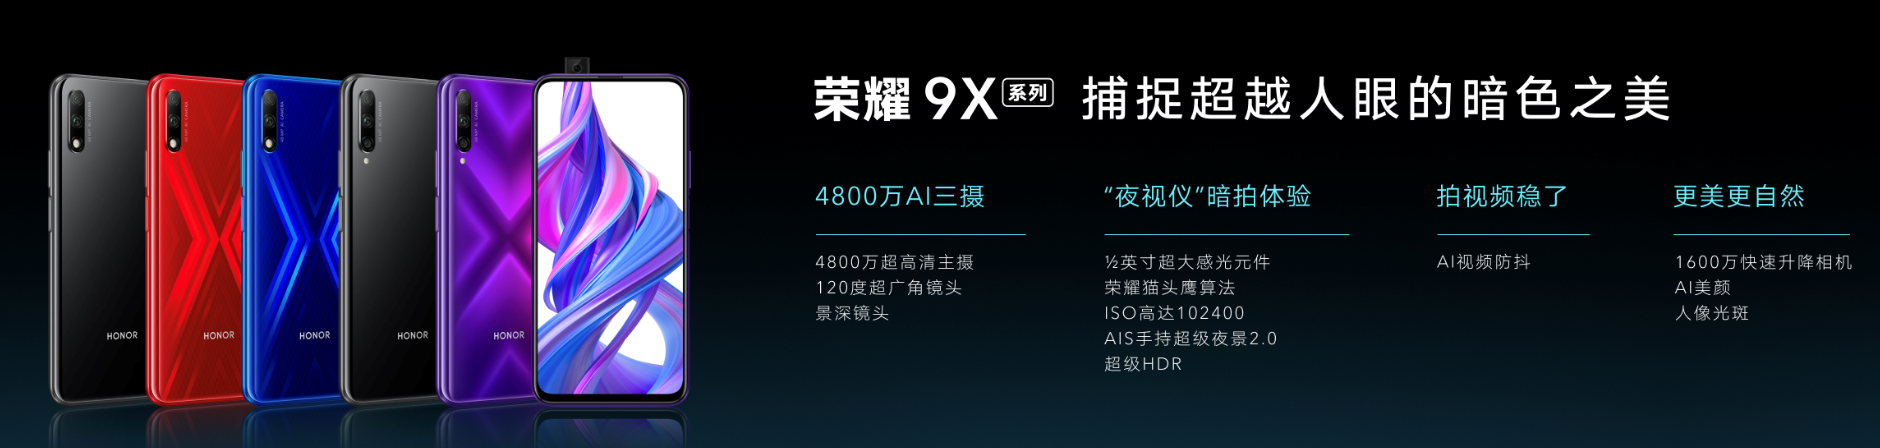 全系麒麟810+超强夜拍 超能旗舰荣耀9X正式发布 智能公会